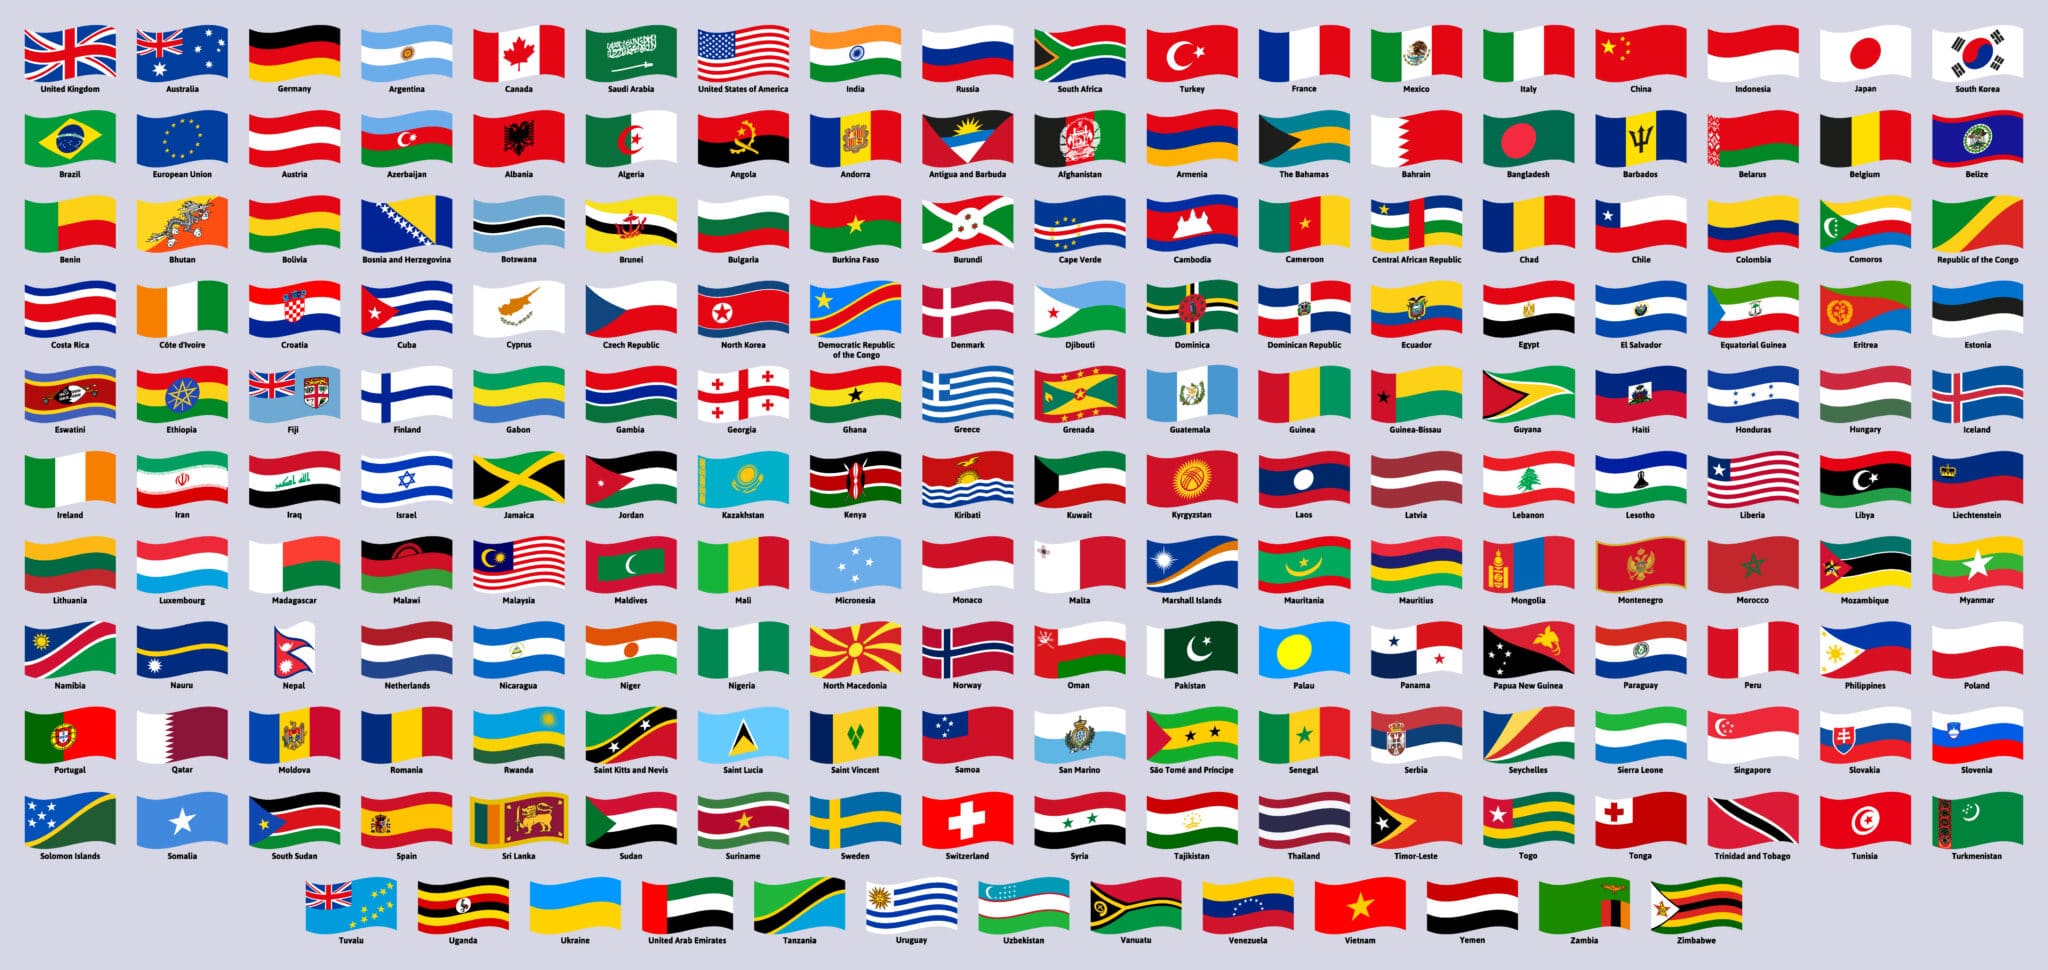 Abbildung der Flaggen aller Länder weltweit